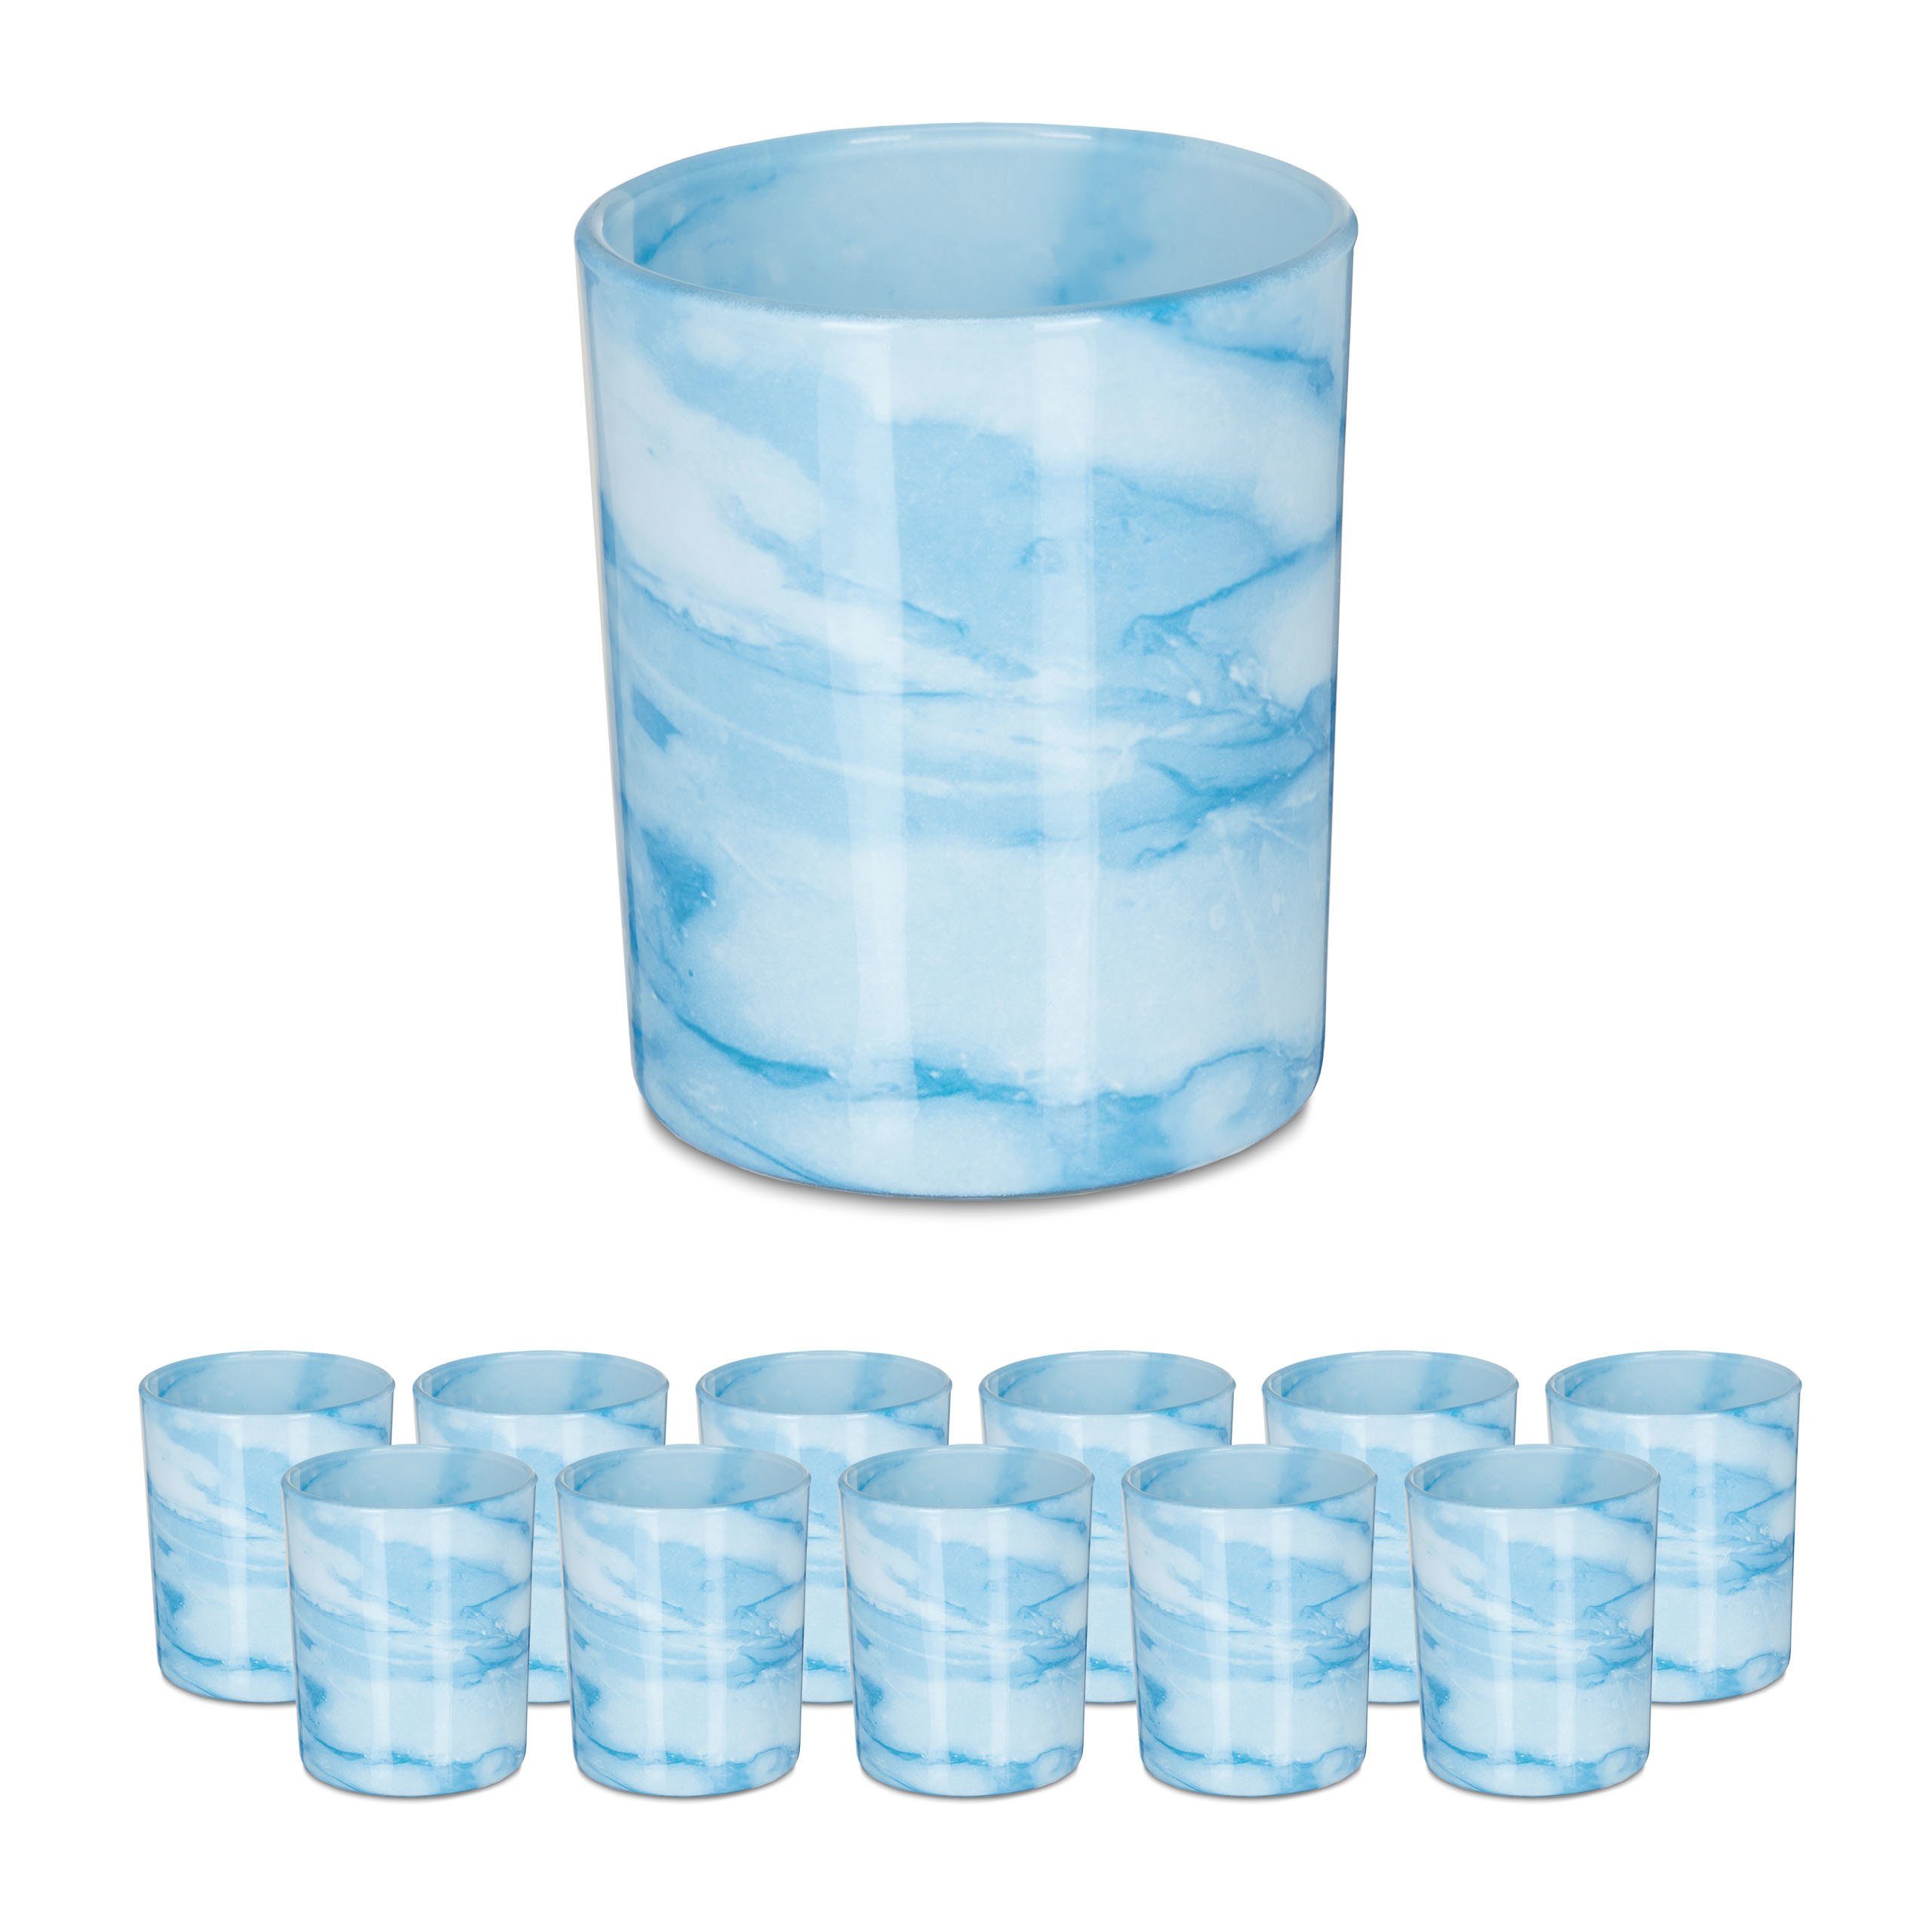 relaxdays Teelichthalter Set Teelichtgläser im 12er blau